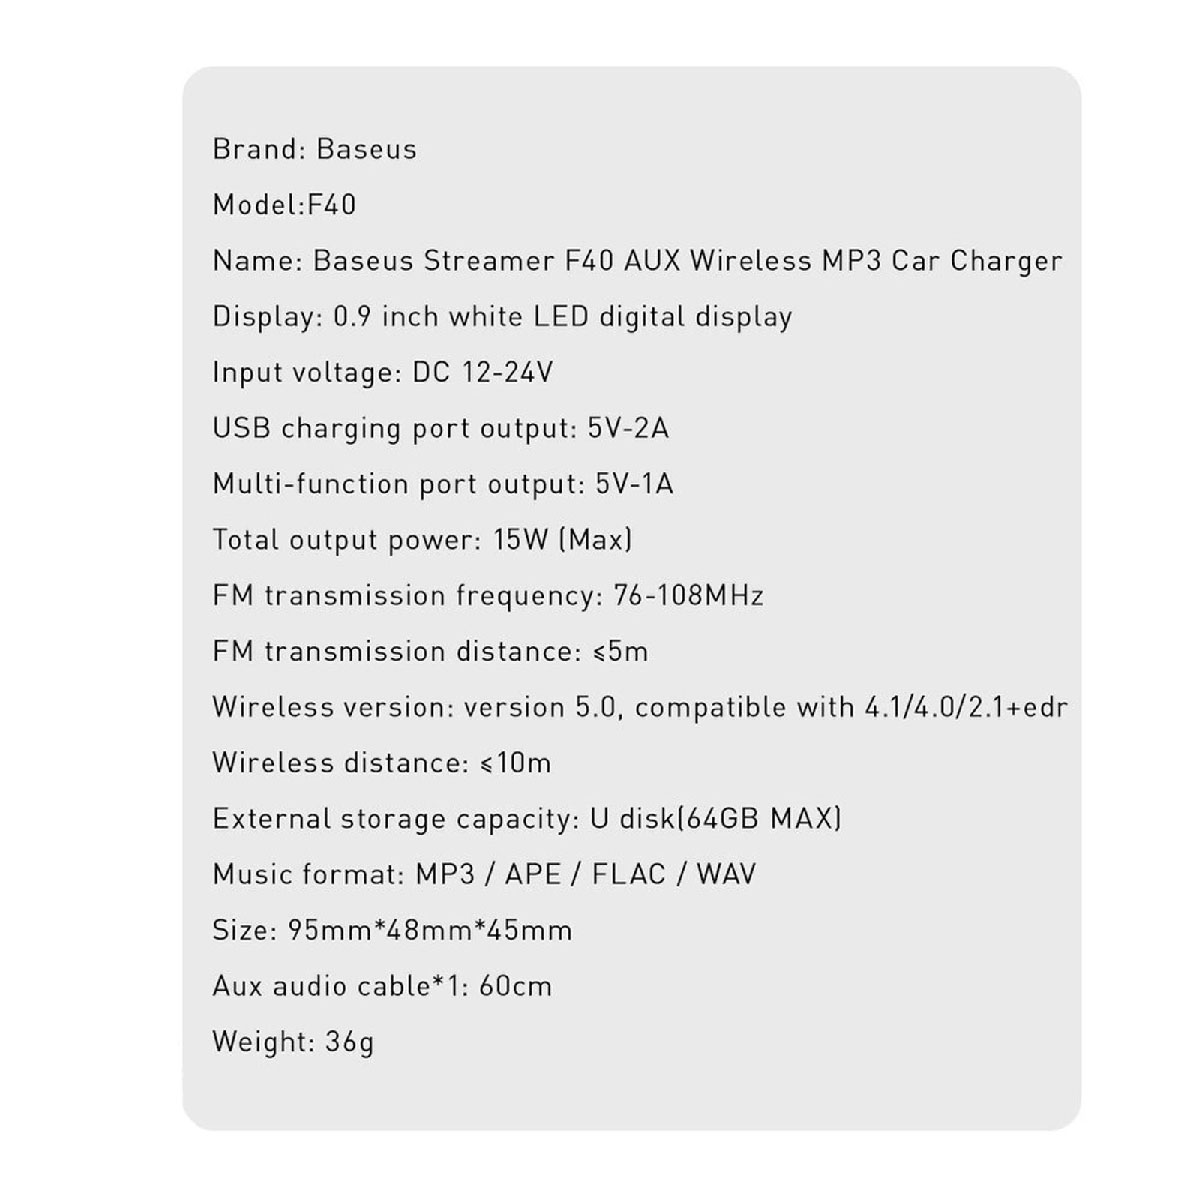 АЗУ (Автомобильное зарядное устройство) Baseus Streamer F40, AUX, Wireless MP3, Bluetooth аудио трансмиттер, цвет черный